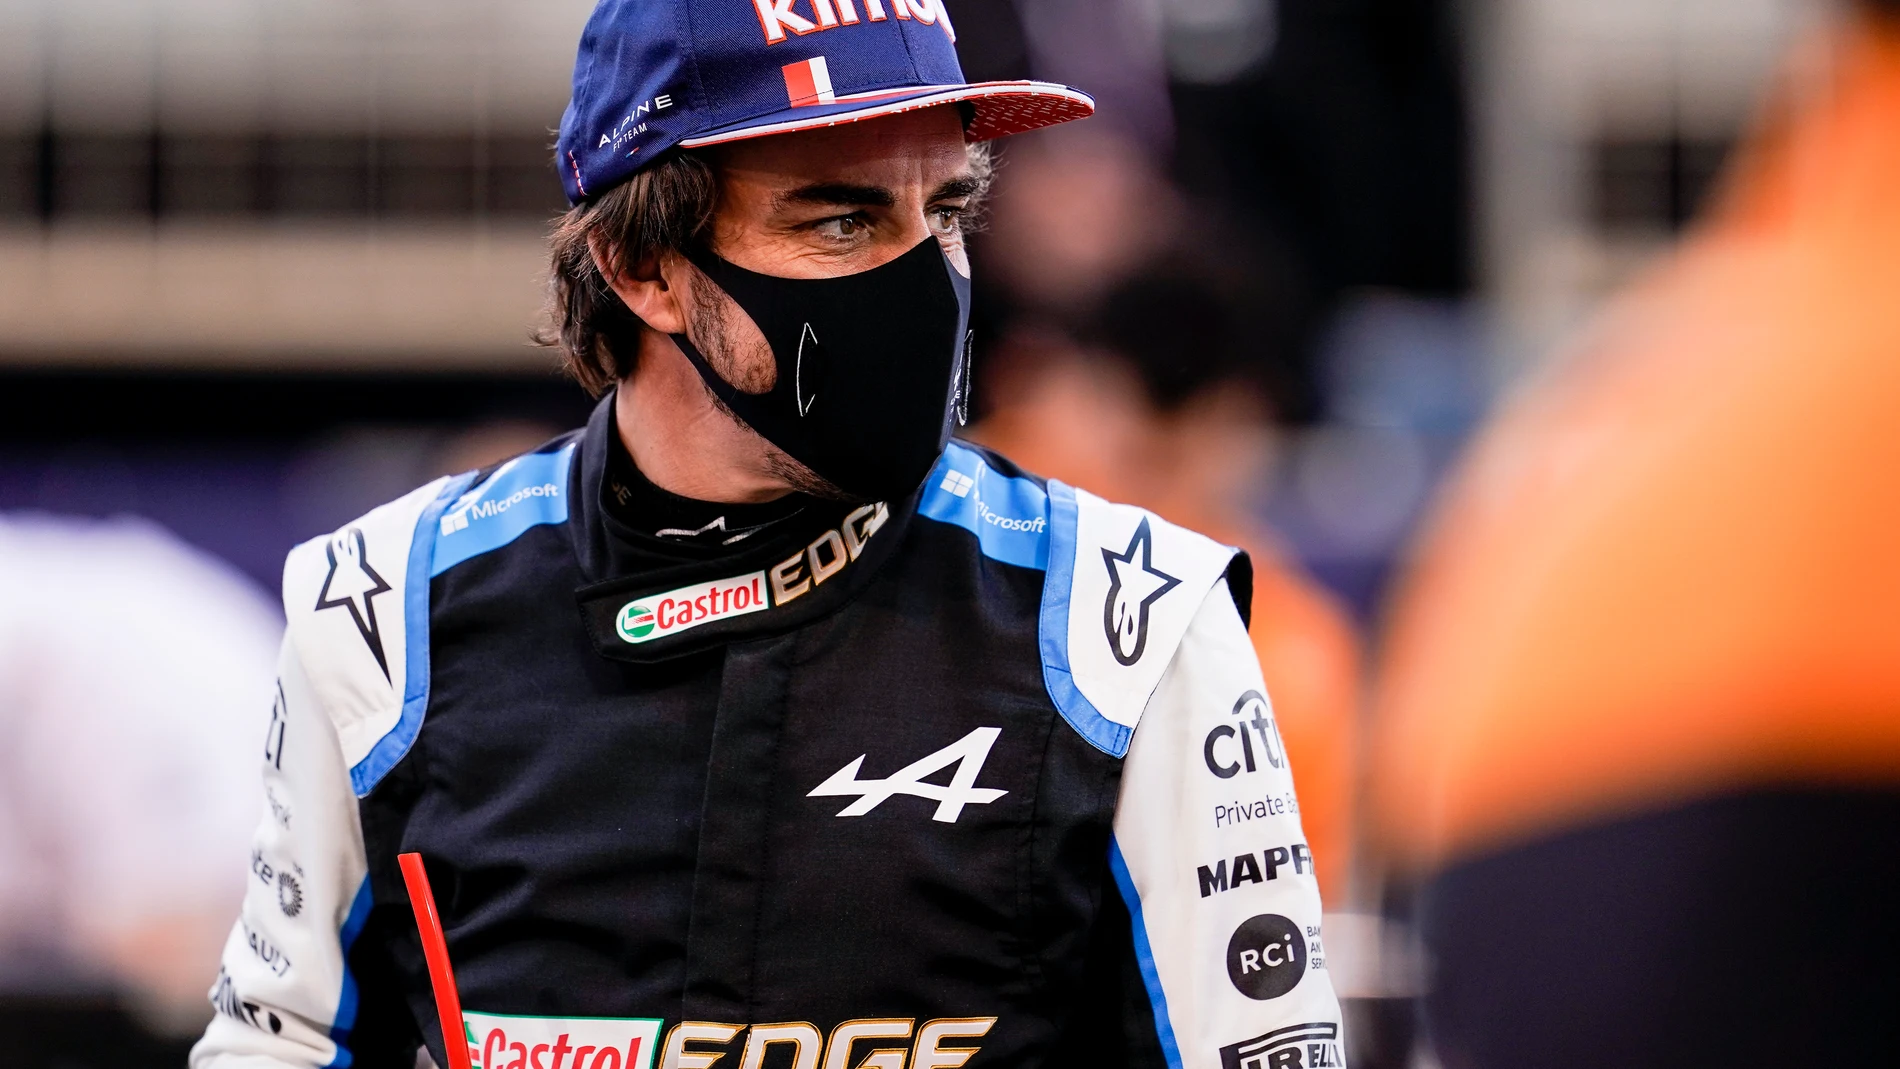 Fernando Alonso ya ha debutado en su regreso a la Fórmula-1 con Alpine. Tuvo que abandonar en el GP de Bahrein